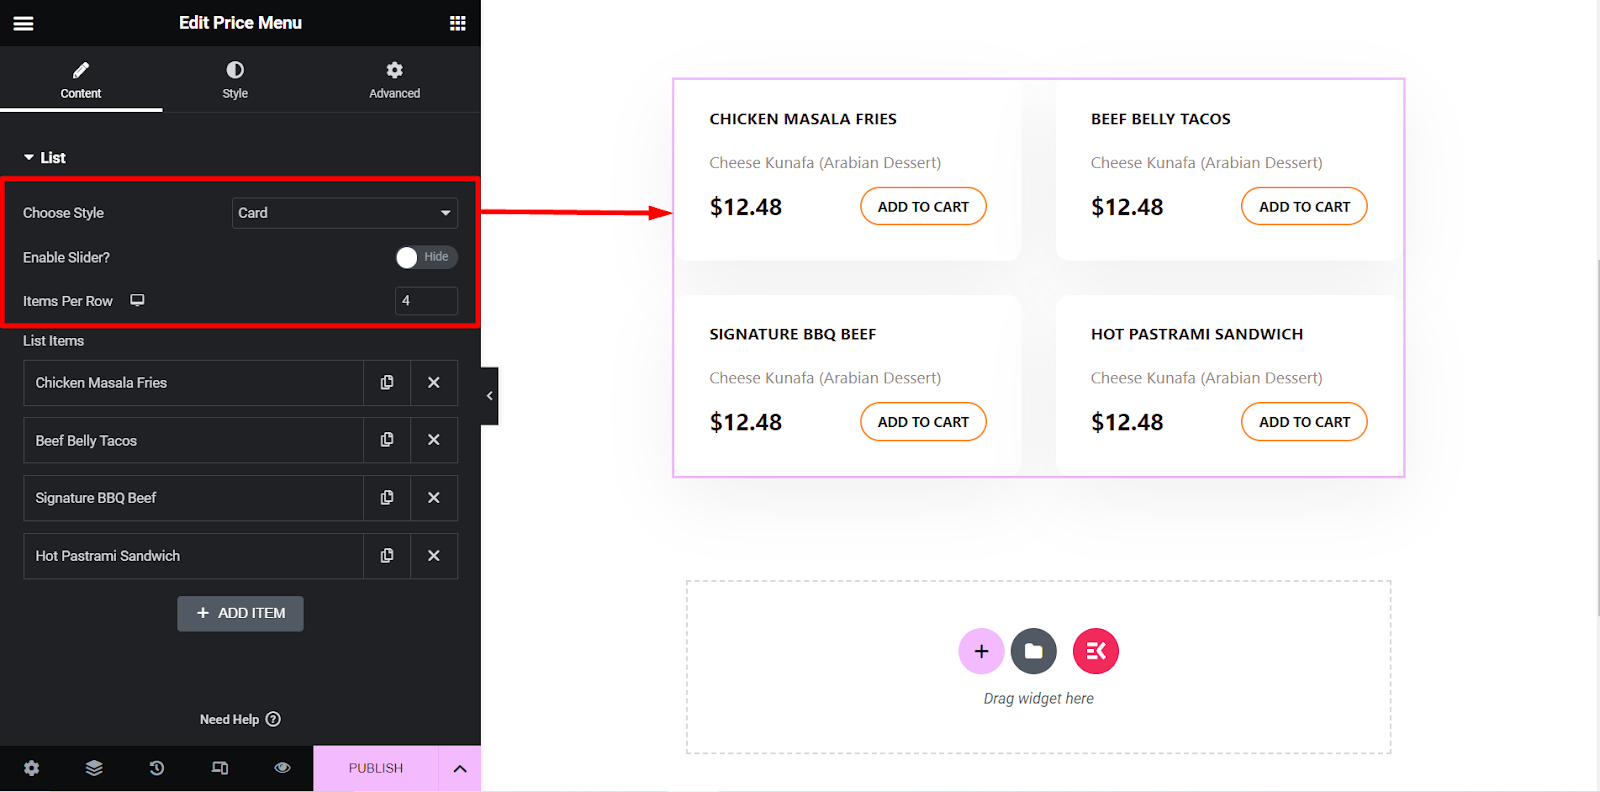 El widget del menú de precios de ElementsKit consta de muchas opciones de personalización.